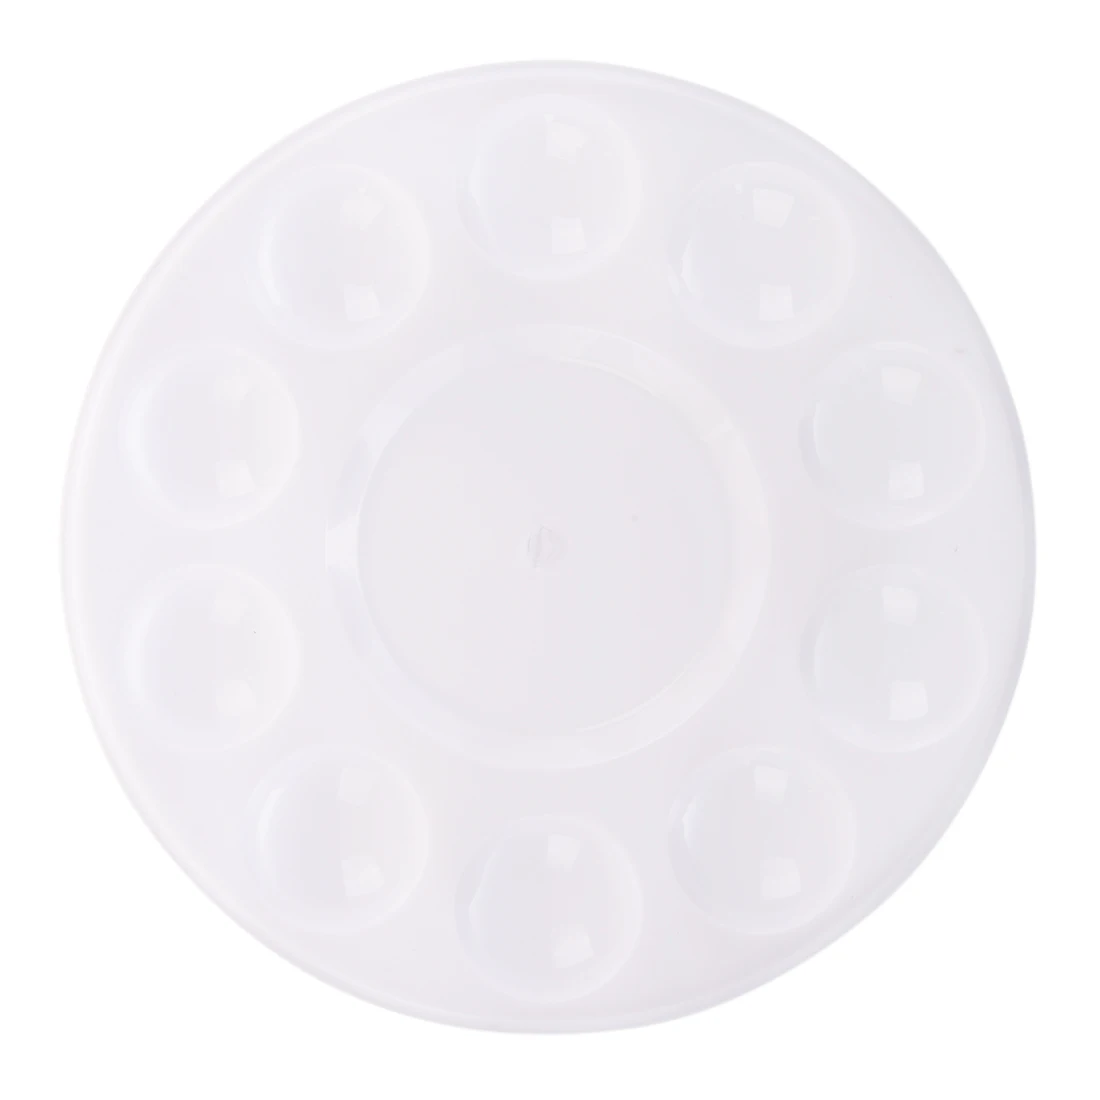 BLEL Hot 10-Well Круглый Профессиональный Сильный и светильник пластиковая палитра для краски лоток-белый - Цвет: White